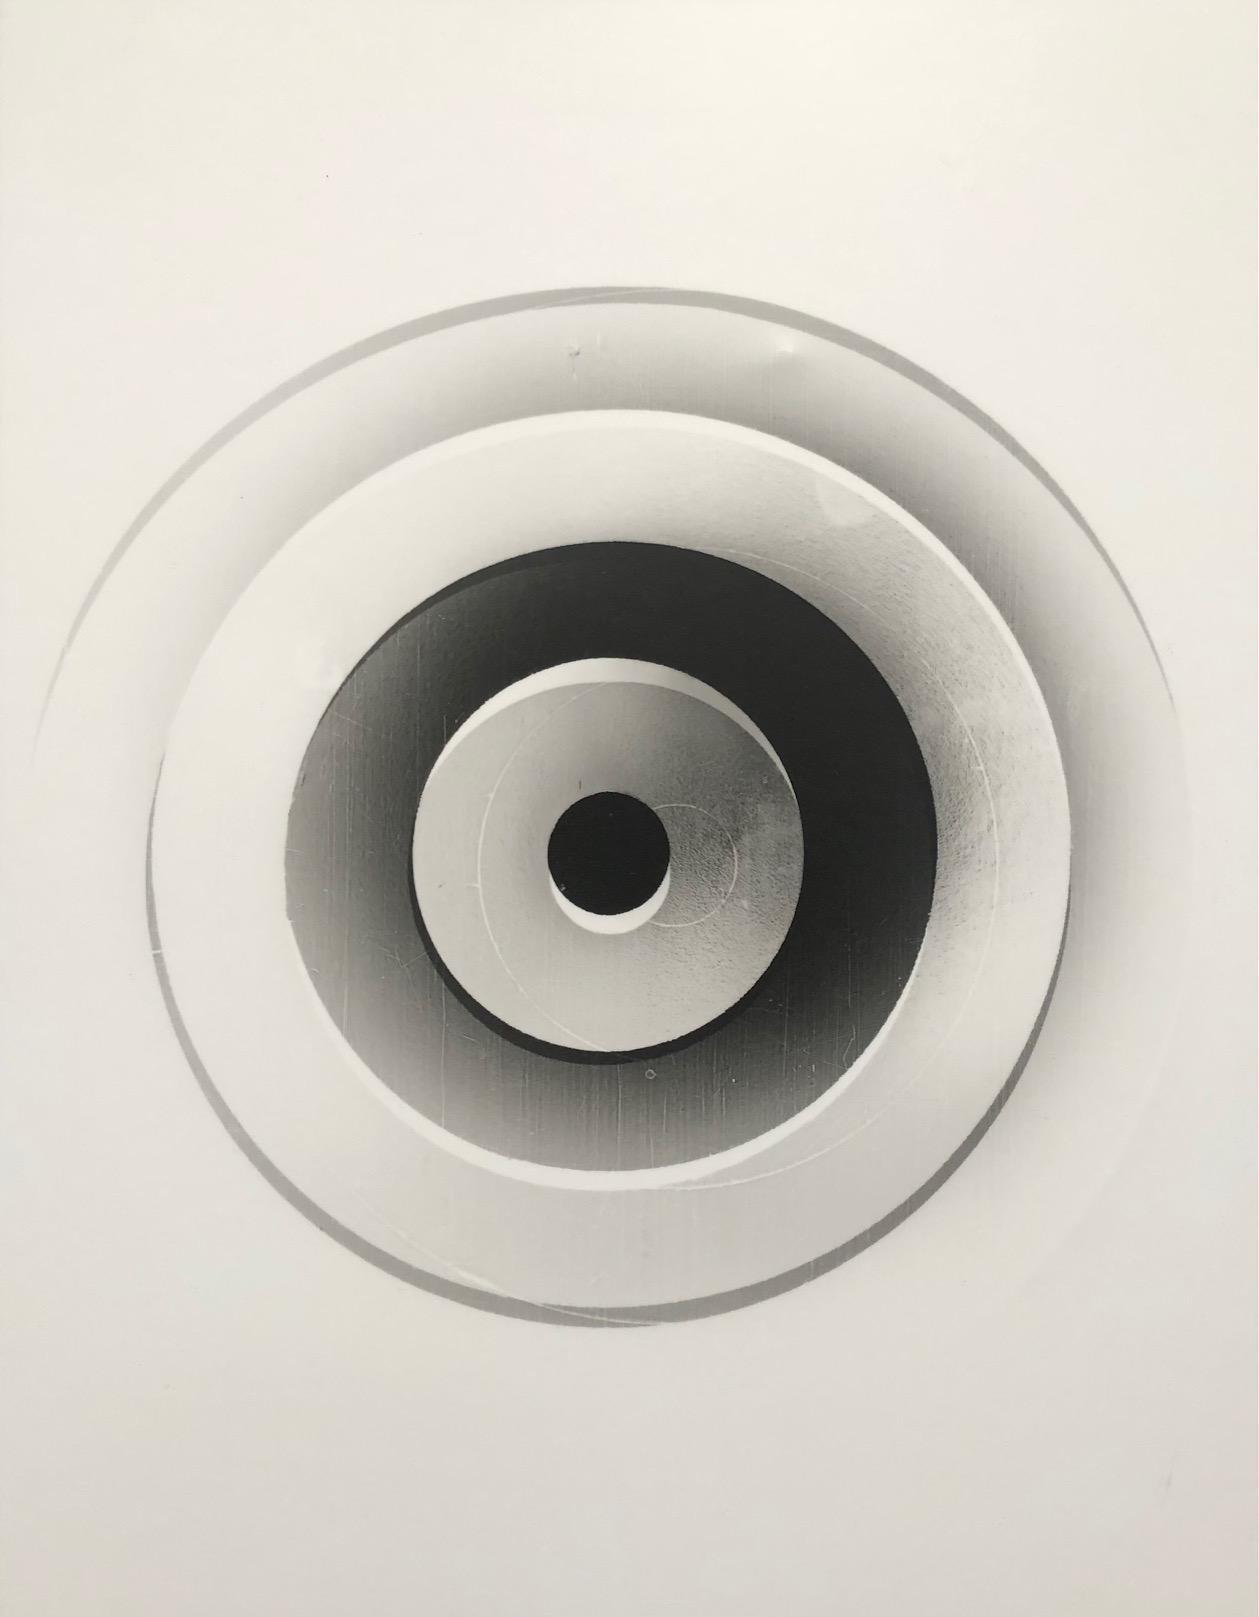 Juan Fernandez, Target (Negative), 2022, Laminated silver gelatin print mounted on masonite, 14” x 11” x 1”